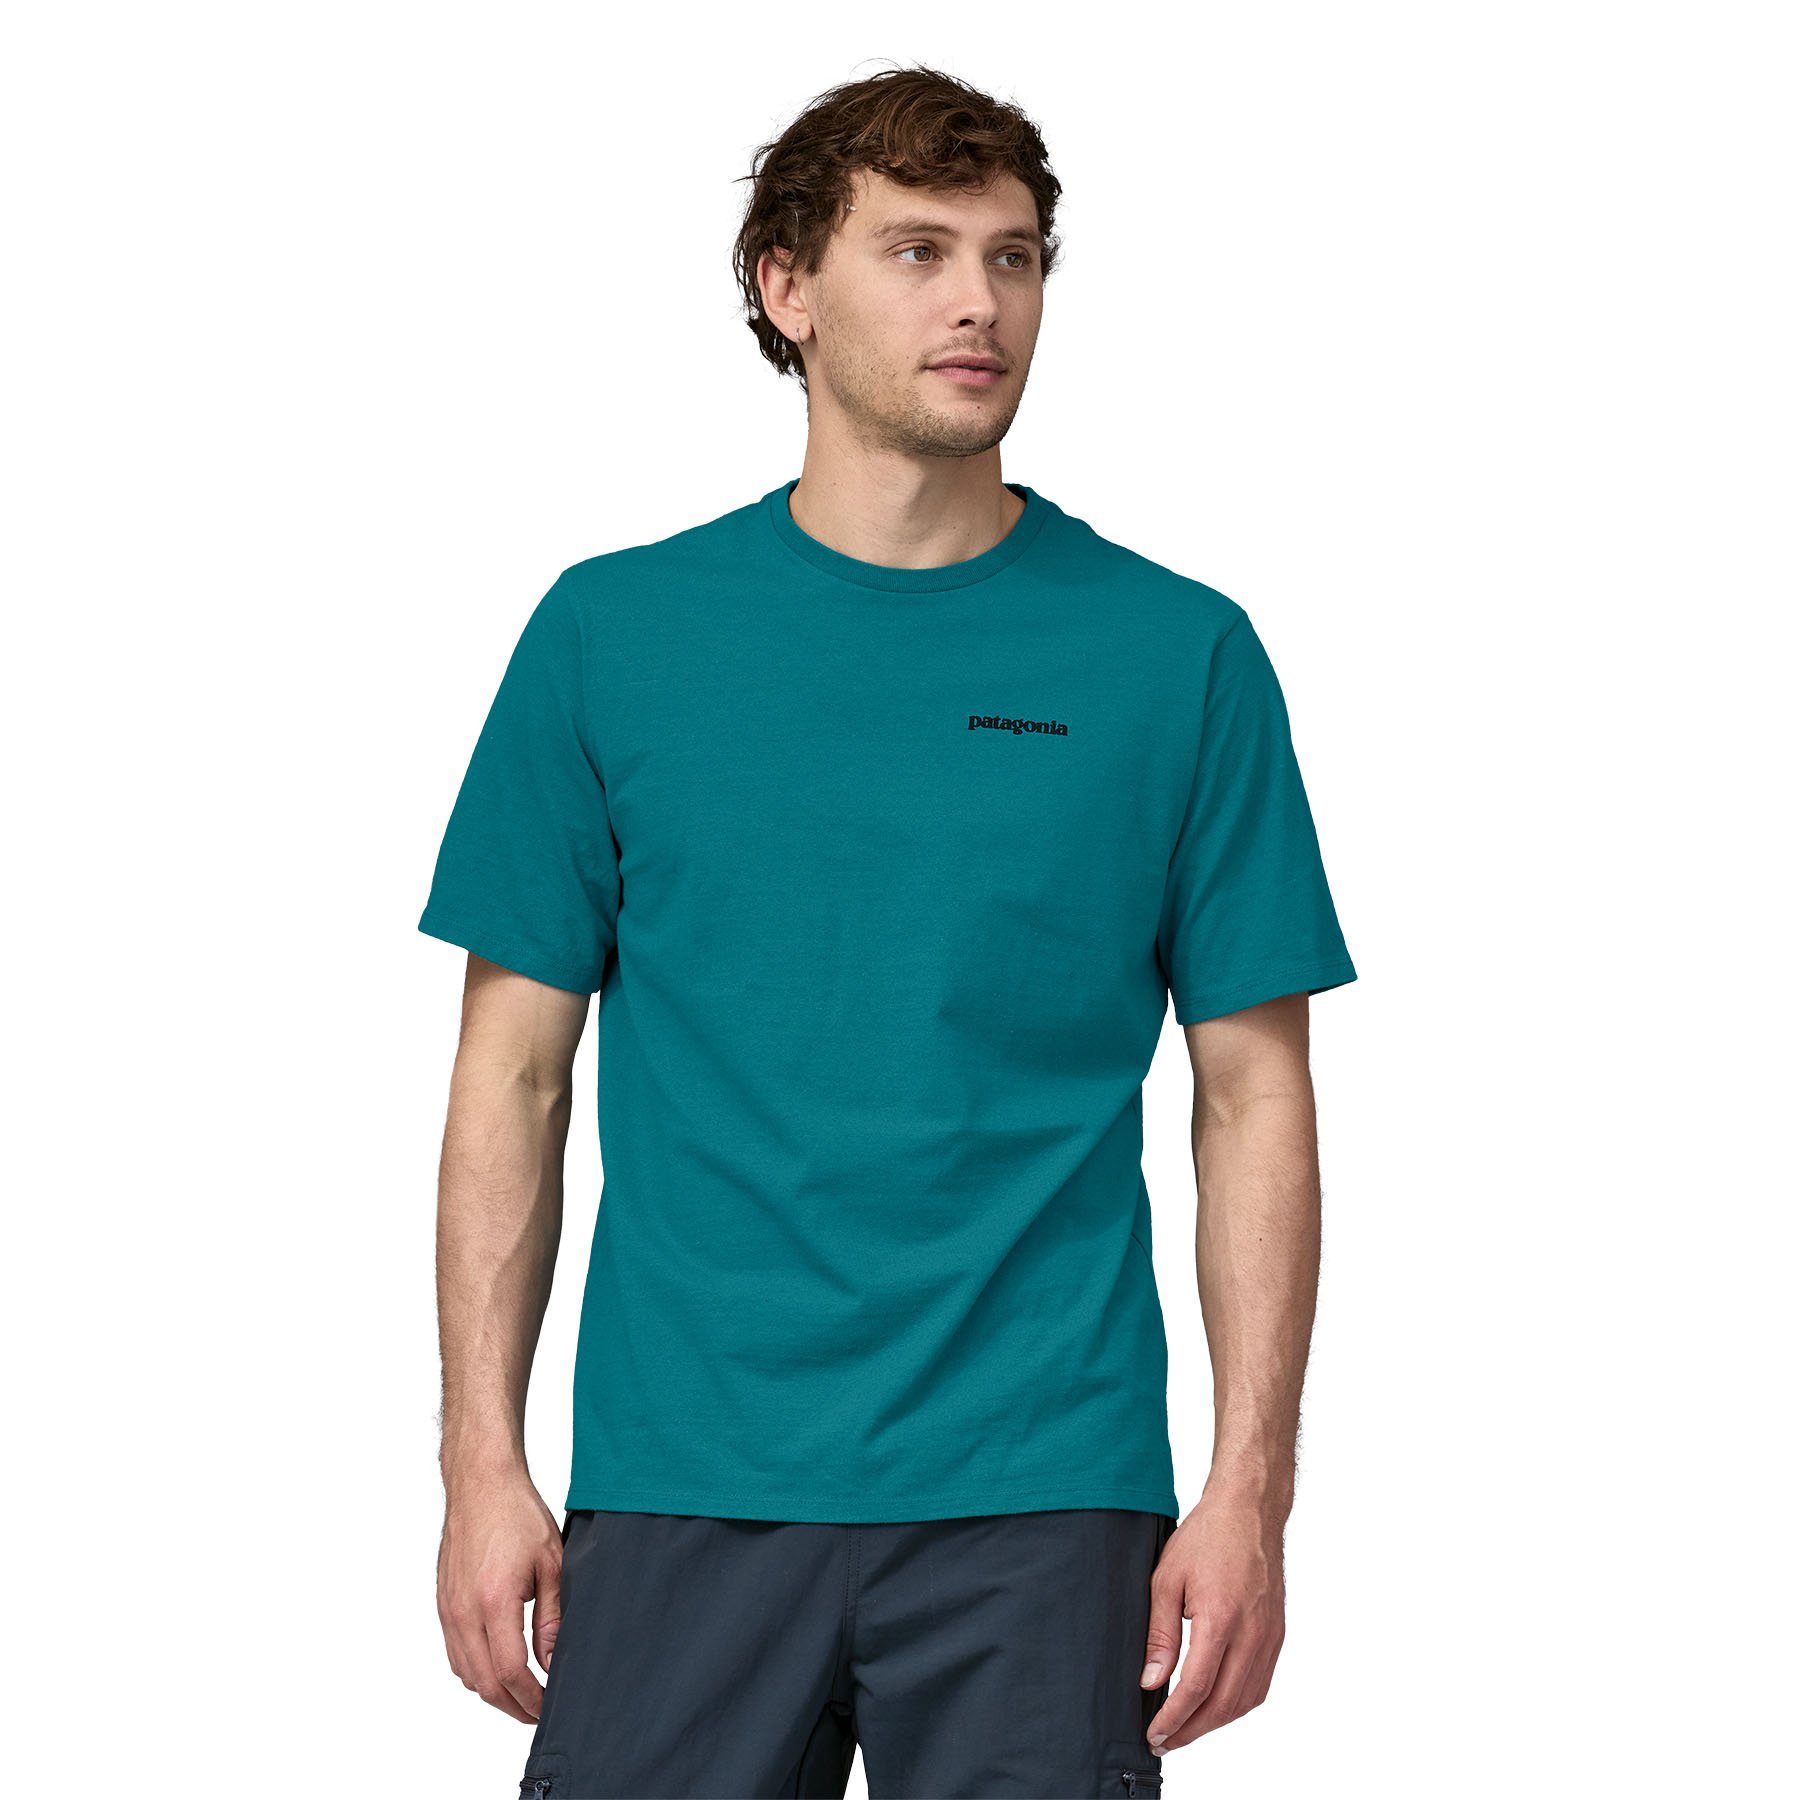 [Sonderverkaufsartikel] Patagonia T-Shirt Patagonia T-Shirt Herren belay Responsibili-Tee blue P-6 Adult Logo